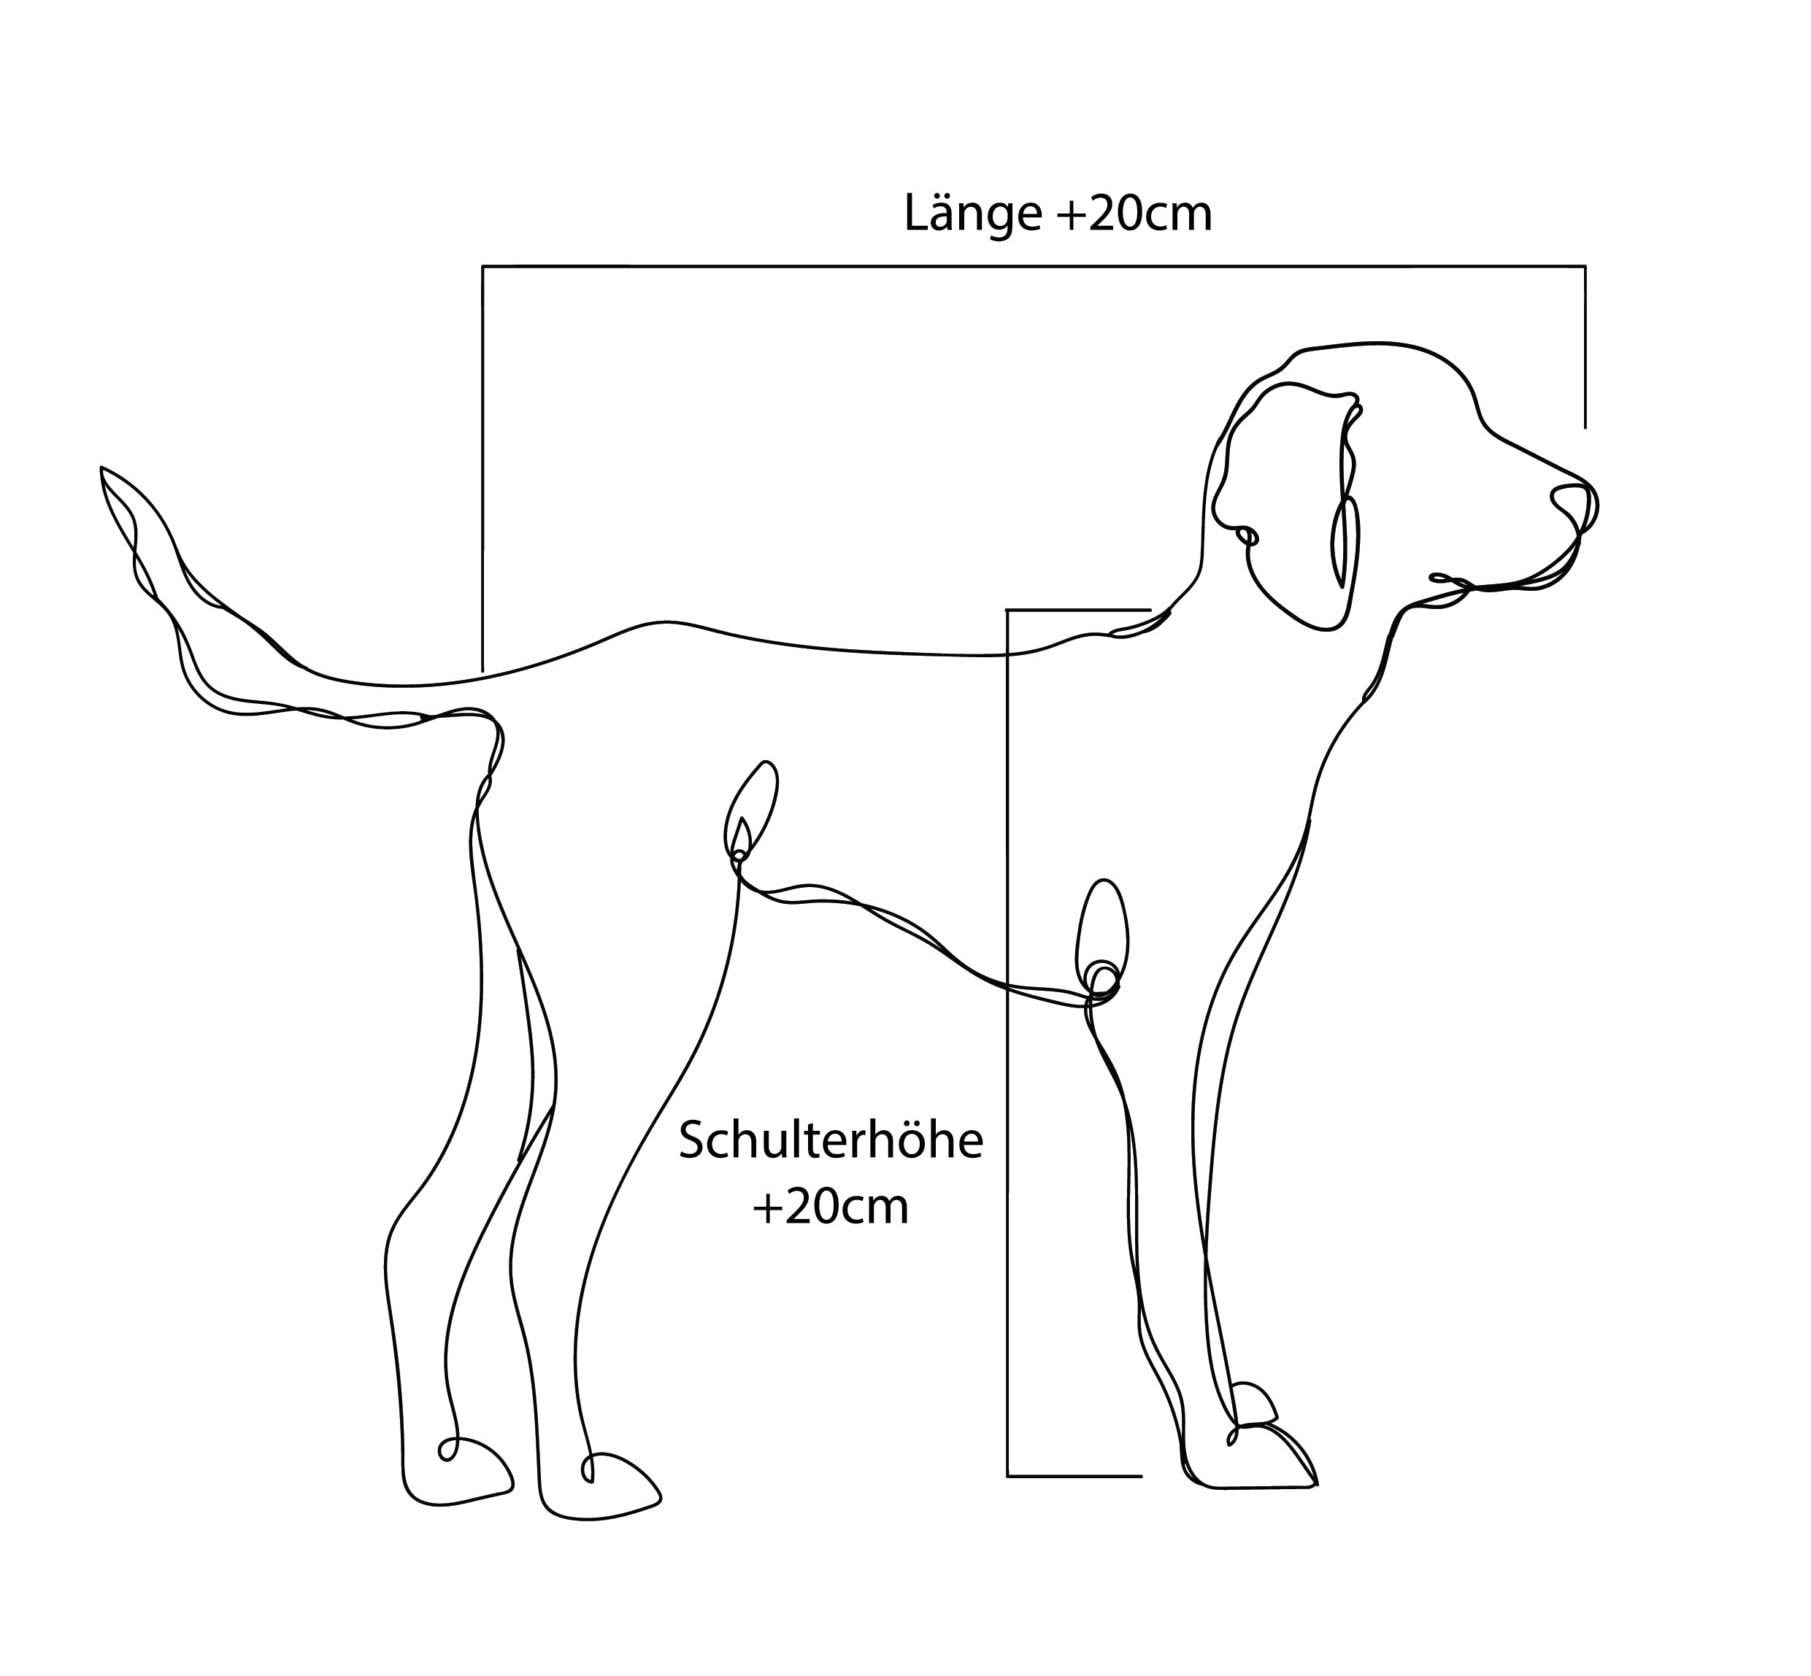 Hund ausmessen für die richtige Größe eines orthopädischen Hundebetts